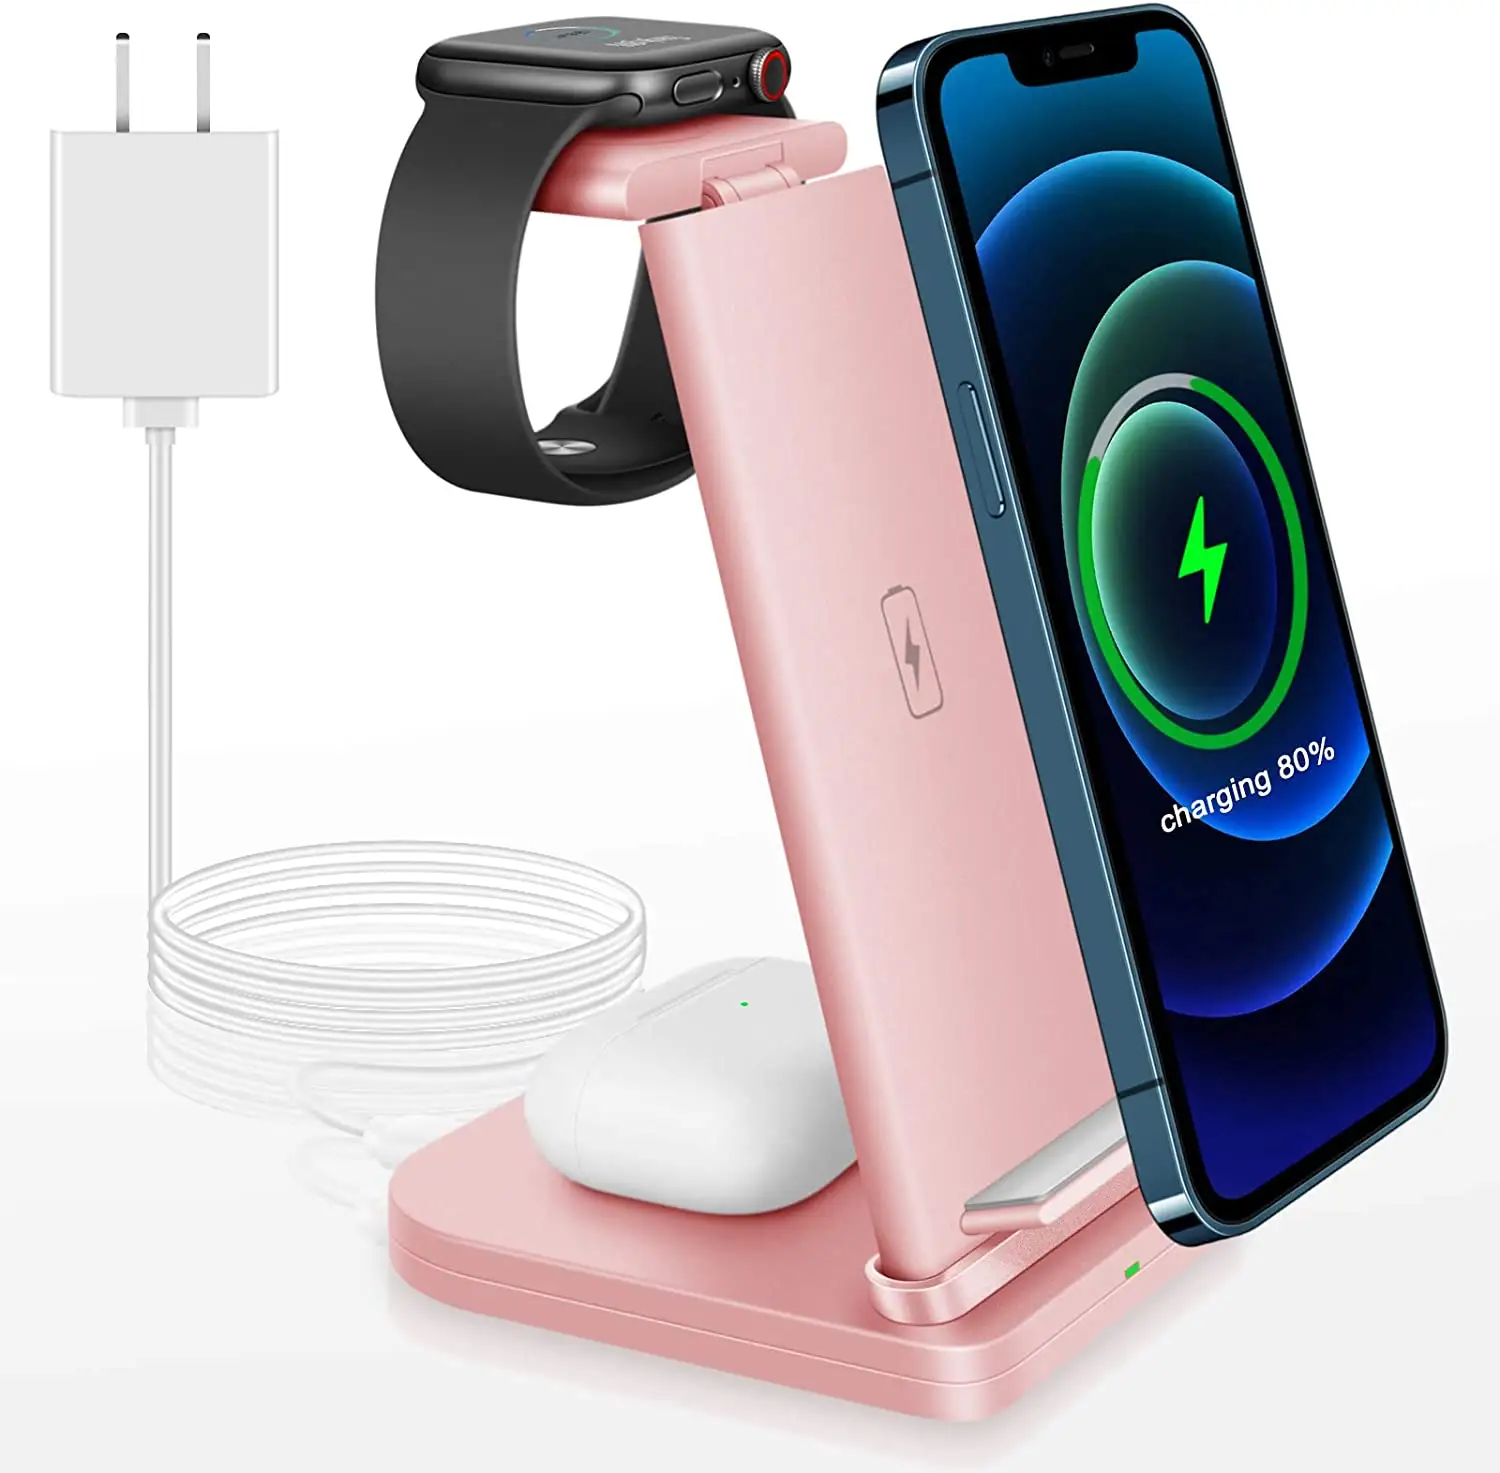 Station de charge rapide QI 15W pour iPhone et Samsung, support de téléphone portable, chargeur sans fil 3 en 1, meilleure vente sur Amazon